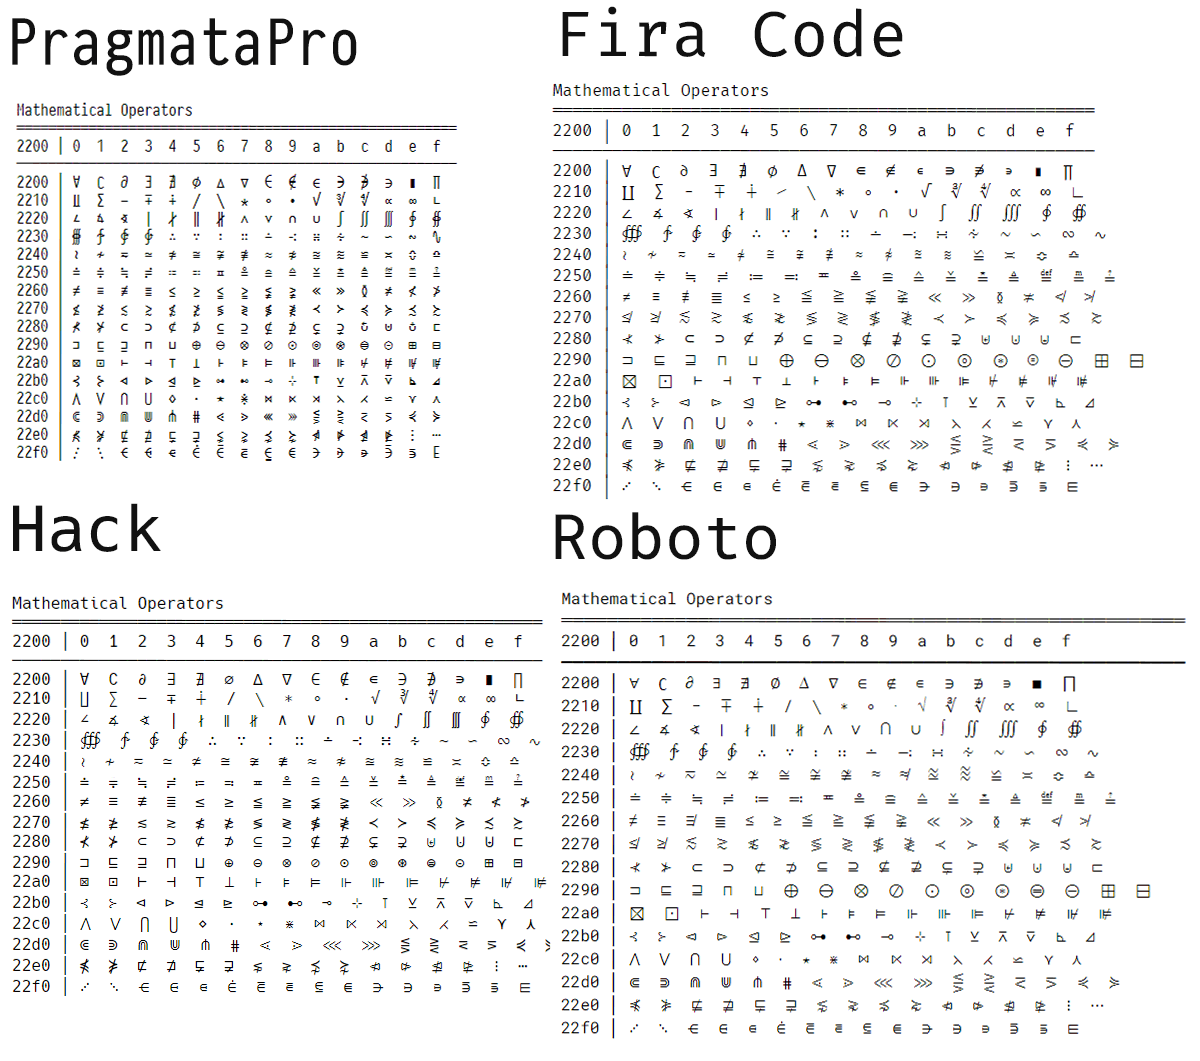 [Mathematical Opeartors in PragmataPro vs. Fira Code vs. Hack vs. Roboto]